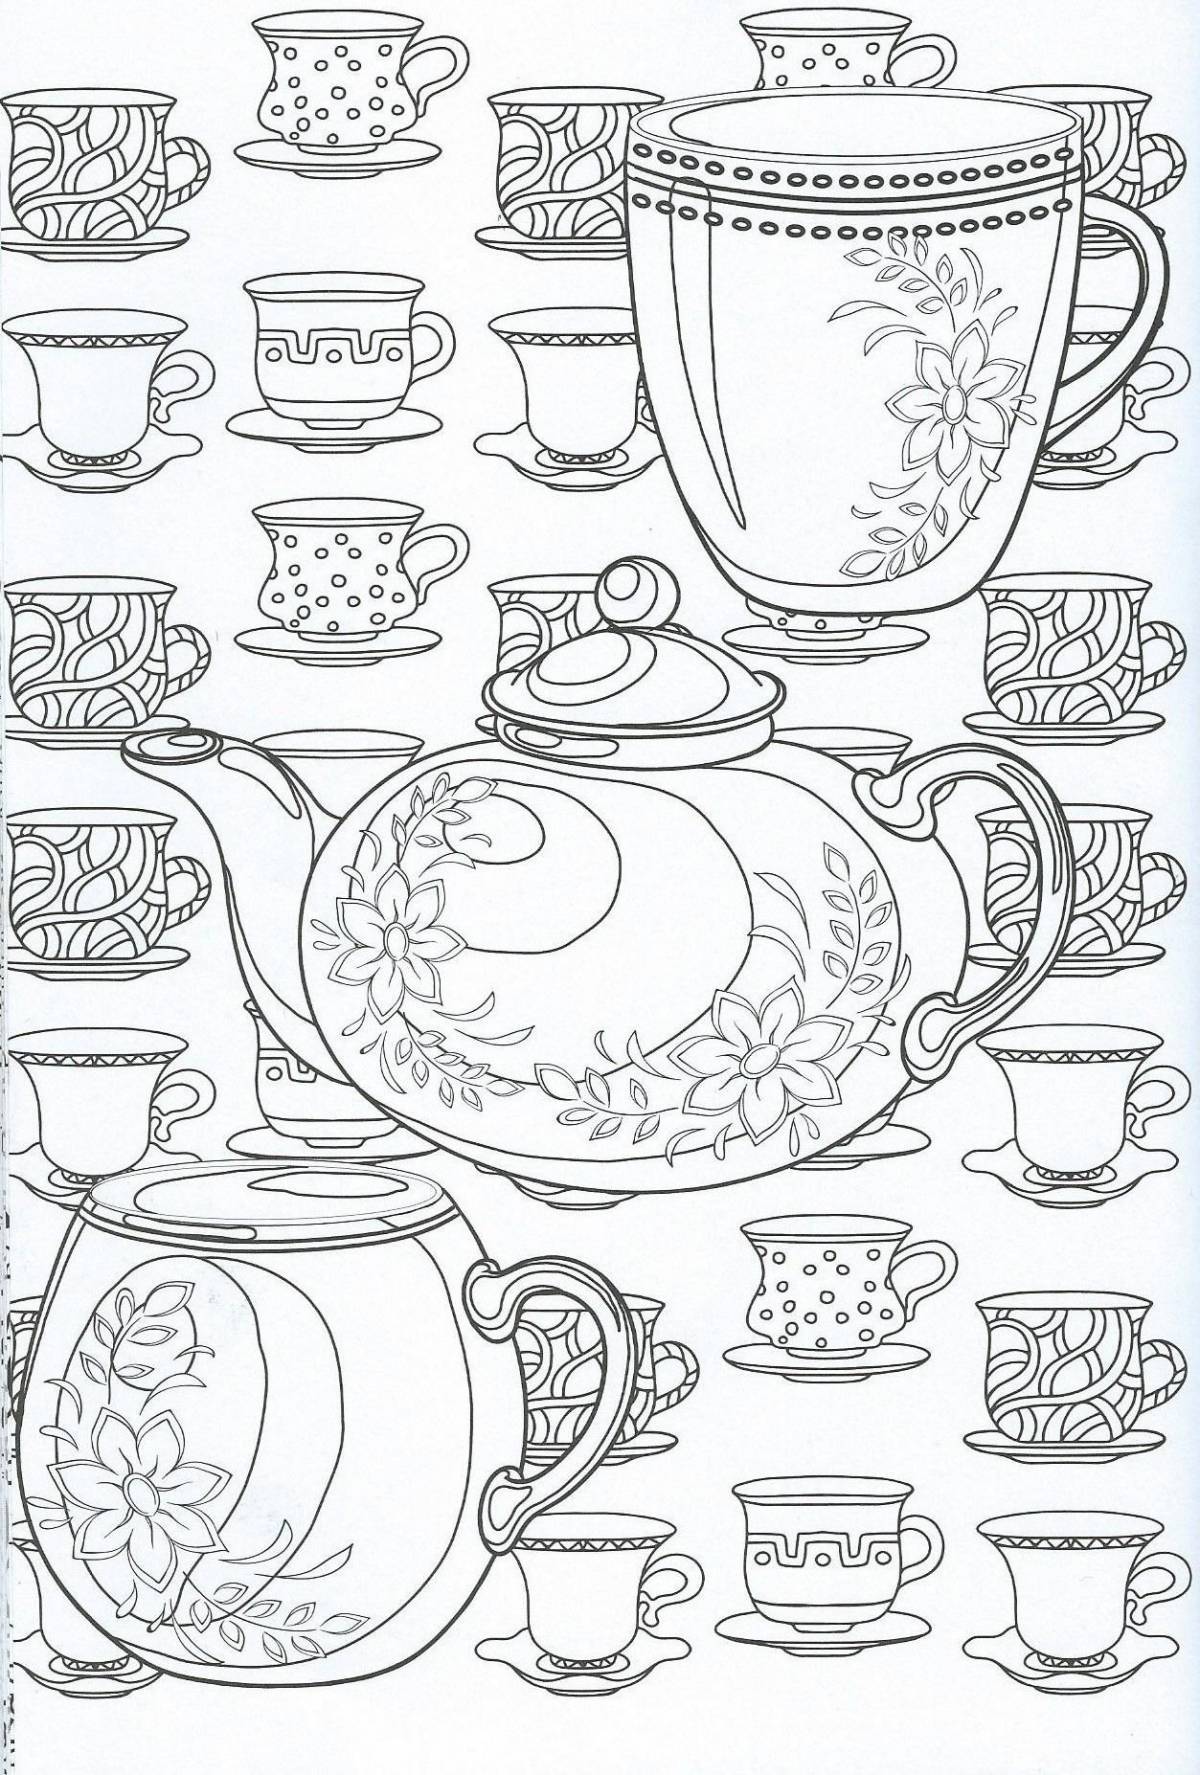 Exquisite tea set coloring book